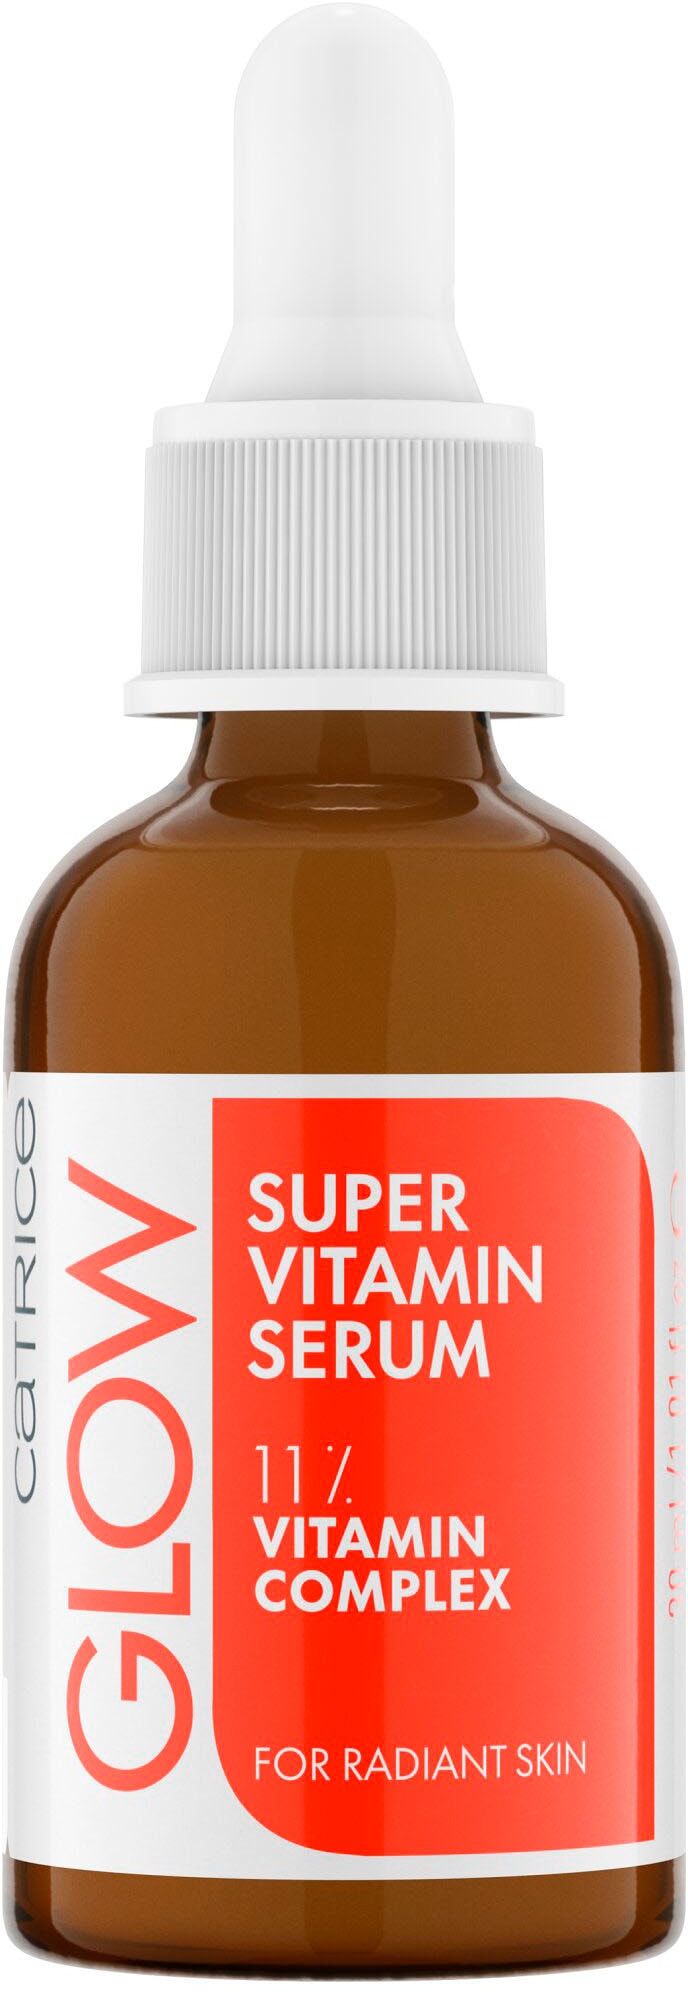 Vitamin online Serum« Catrice kaufen Gesichtsserum Super »Glow